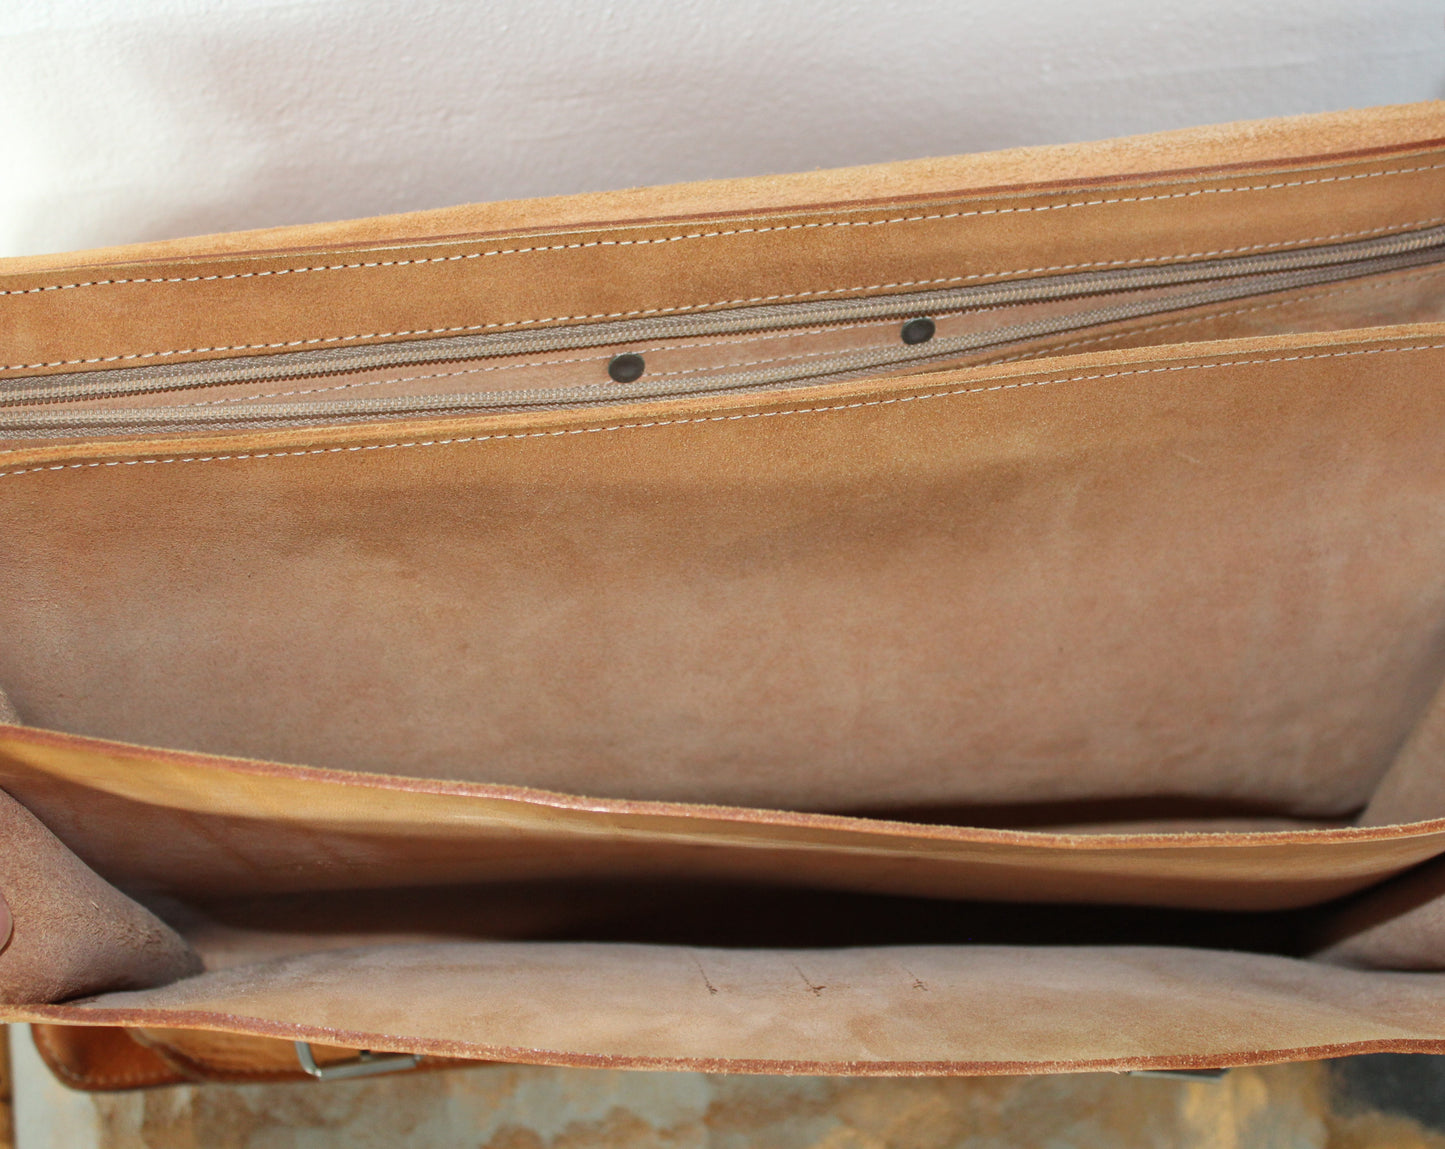 Secondhand - Gammel kernelæder taske med 2 stropper